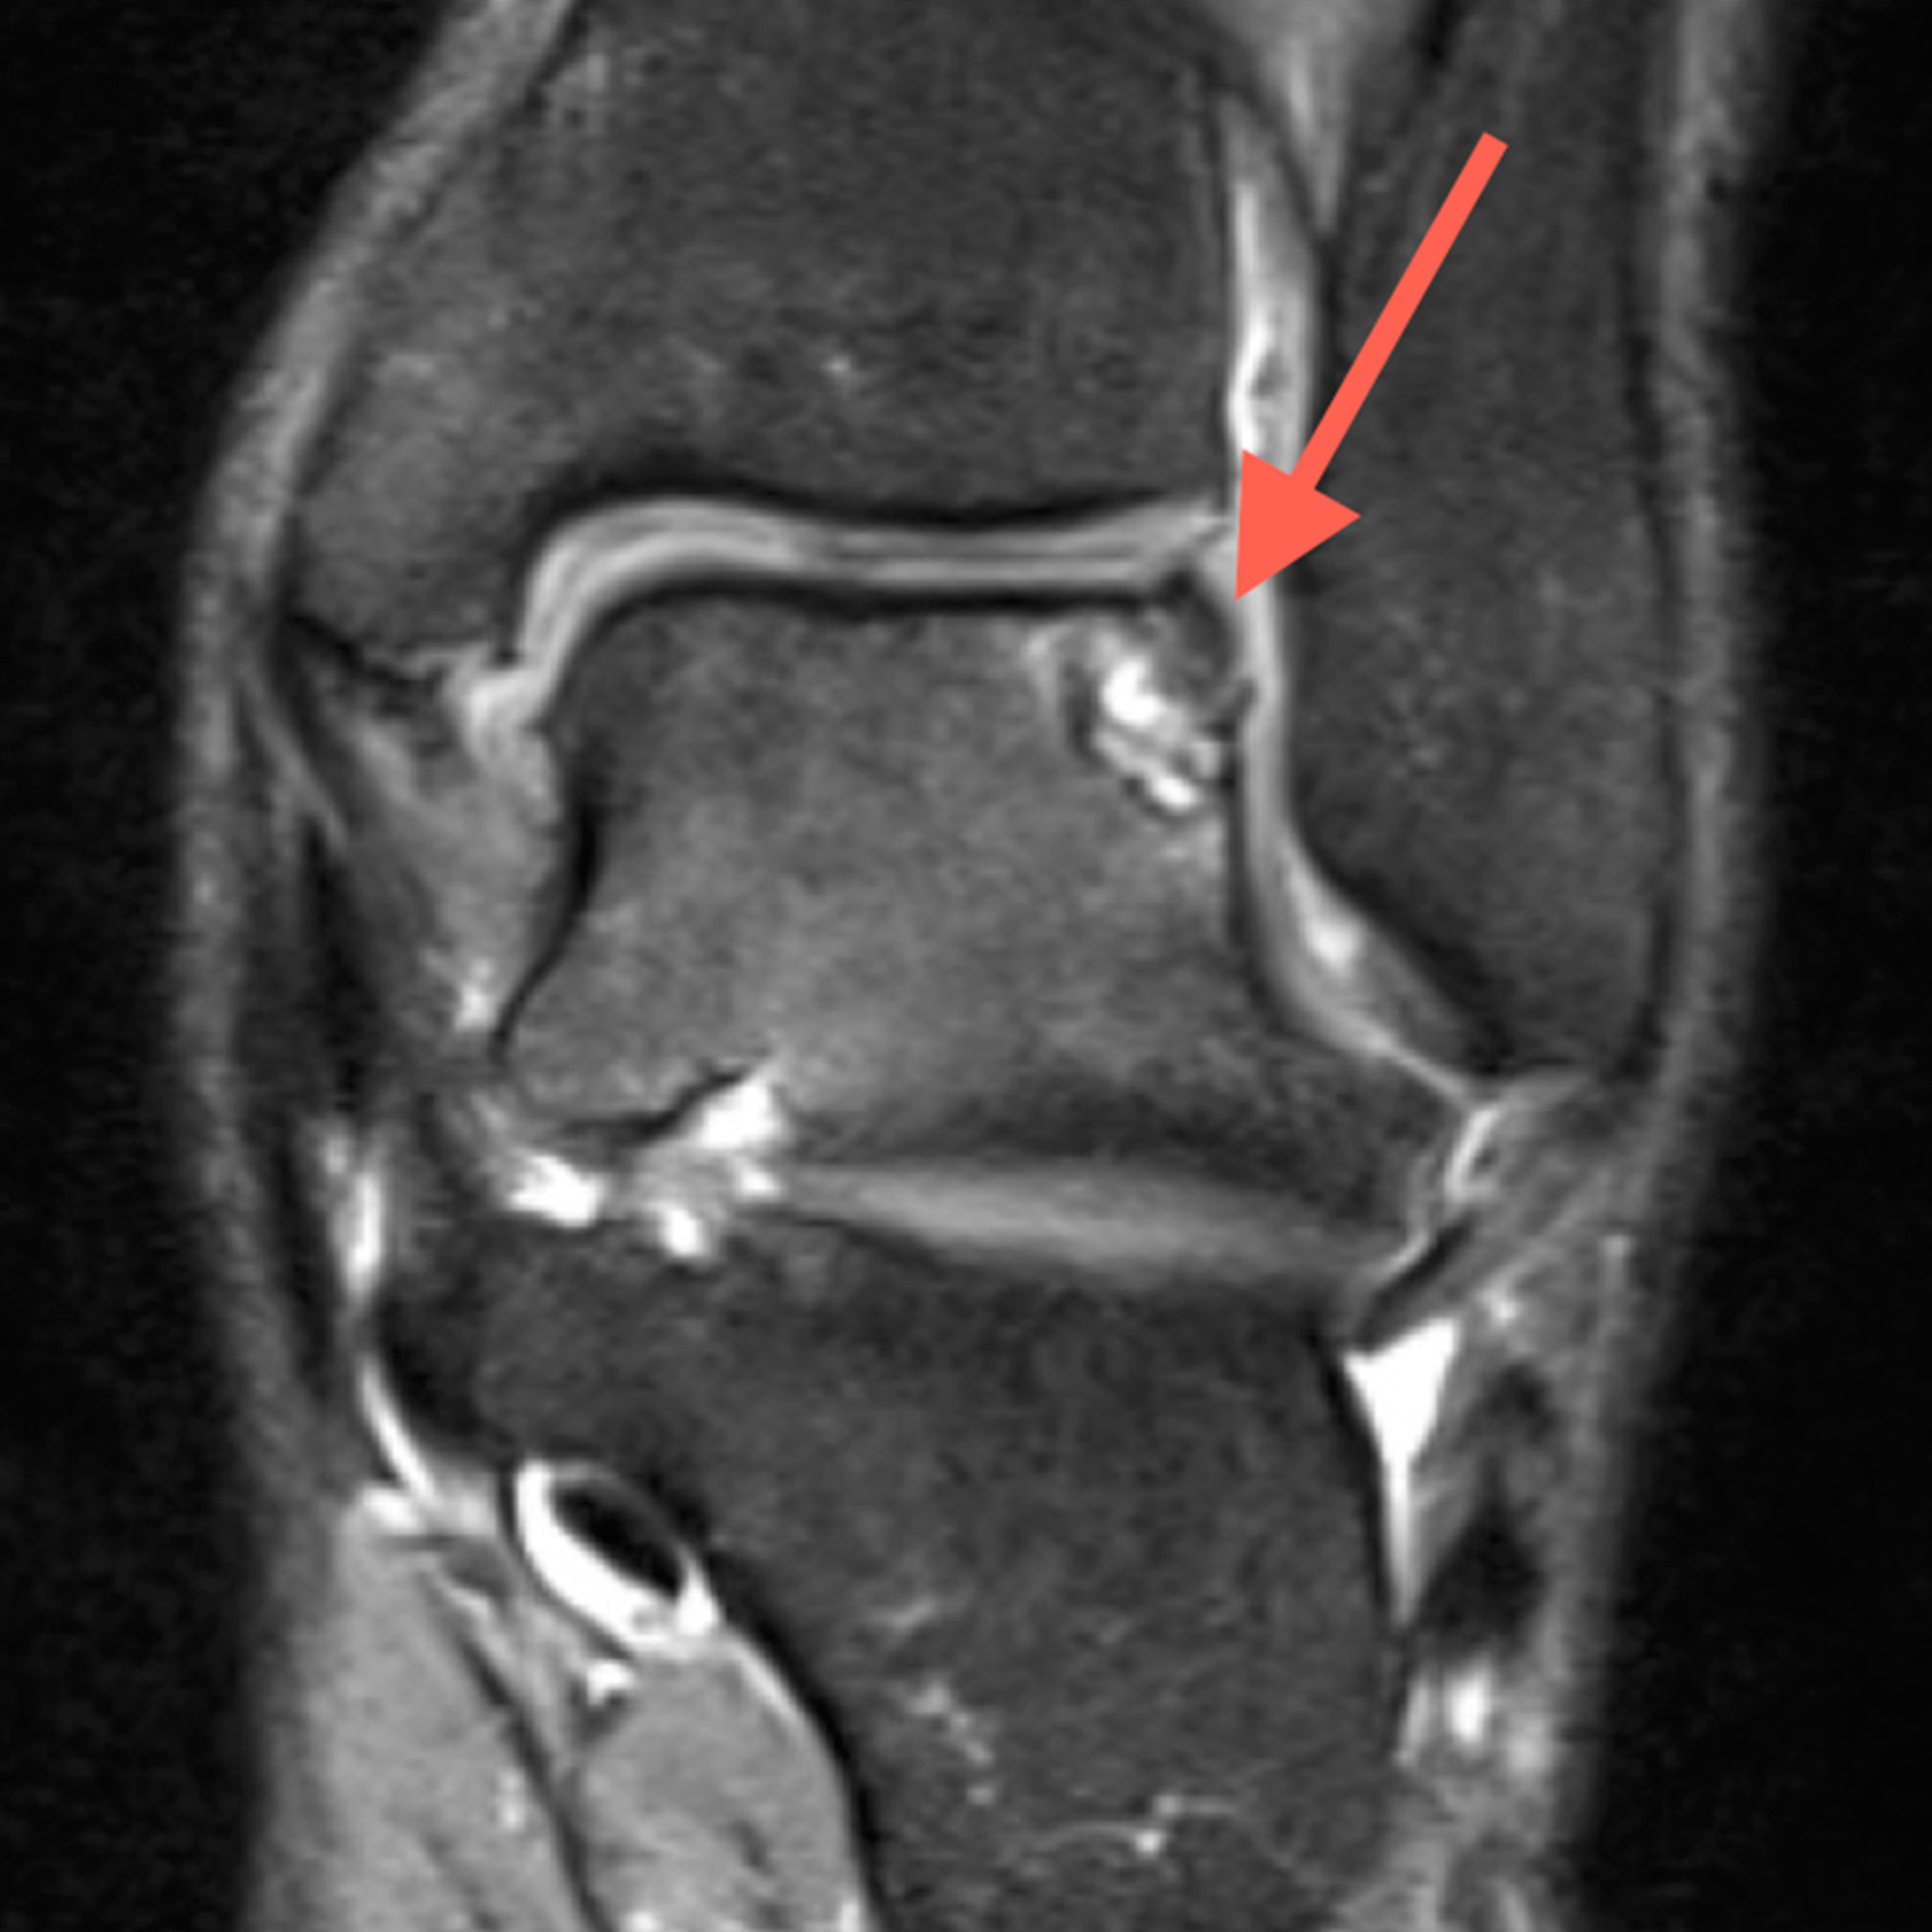  Imagen de RNM con lesión osteocondral de tobillo.